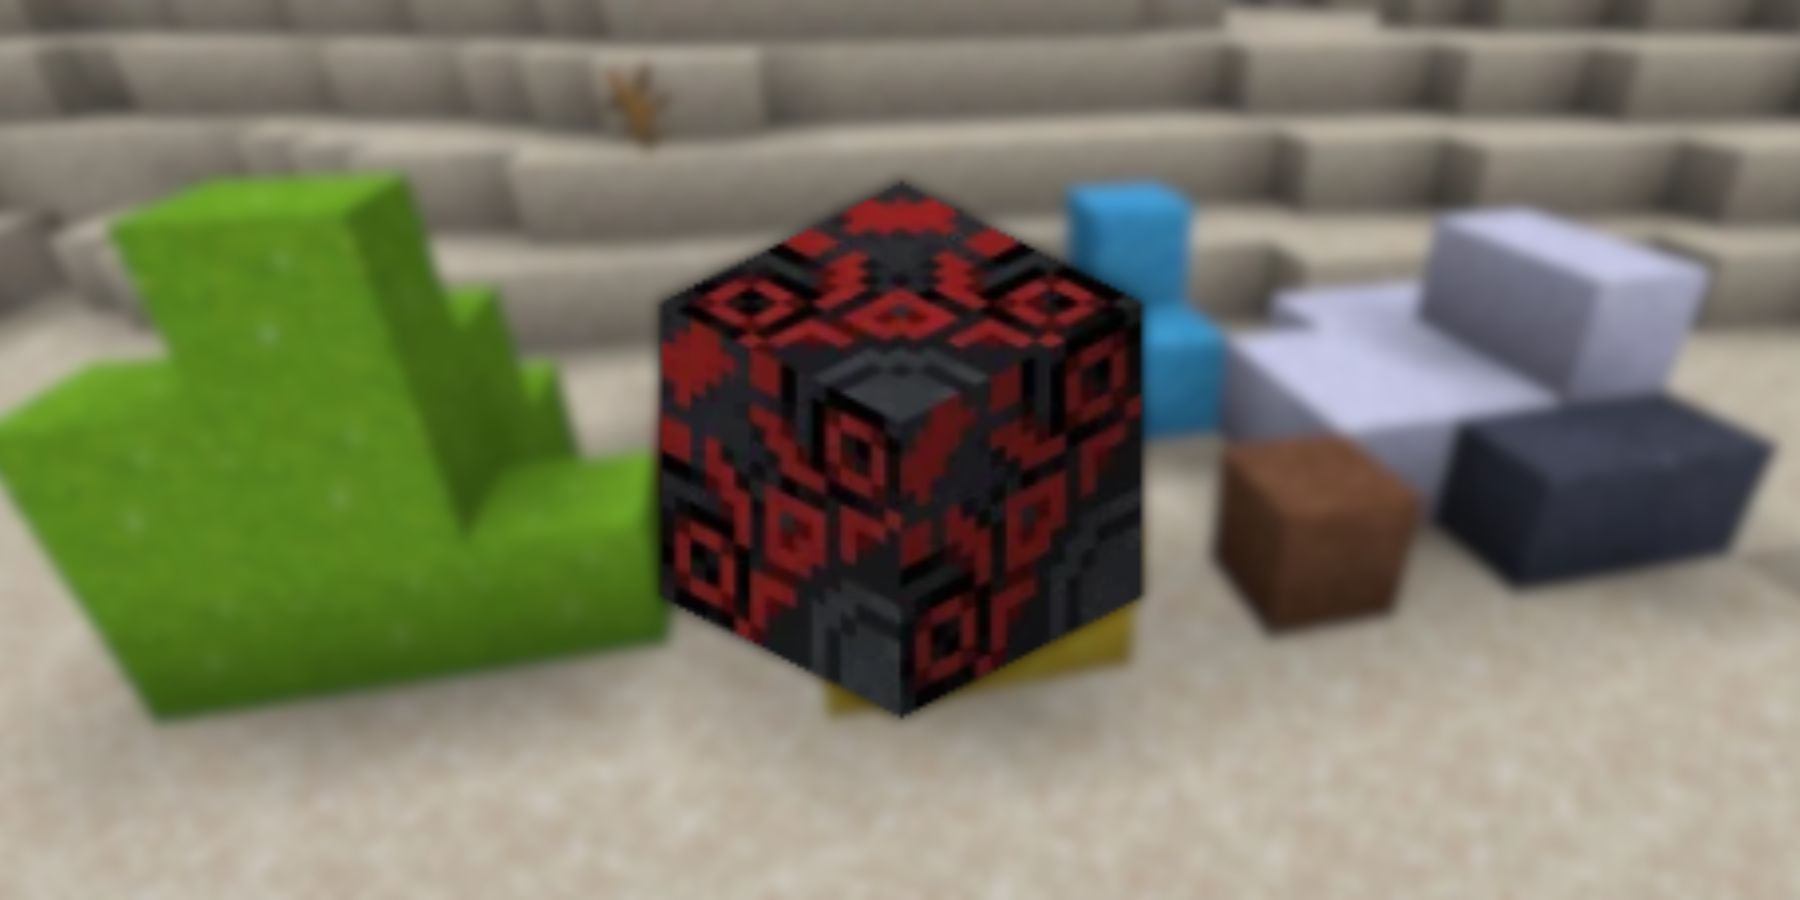 Glazed Terracotta in Minecraft